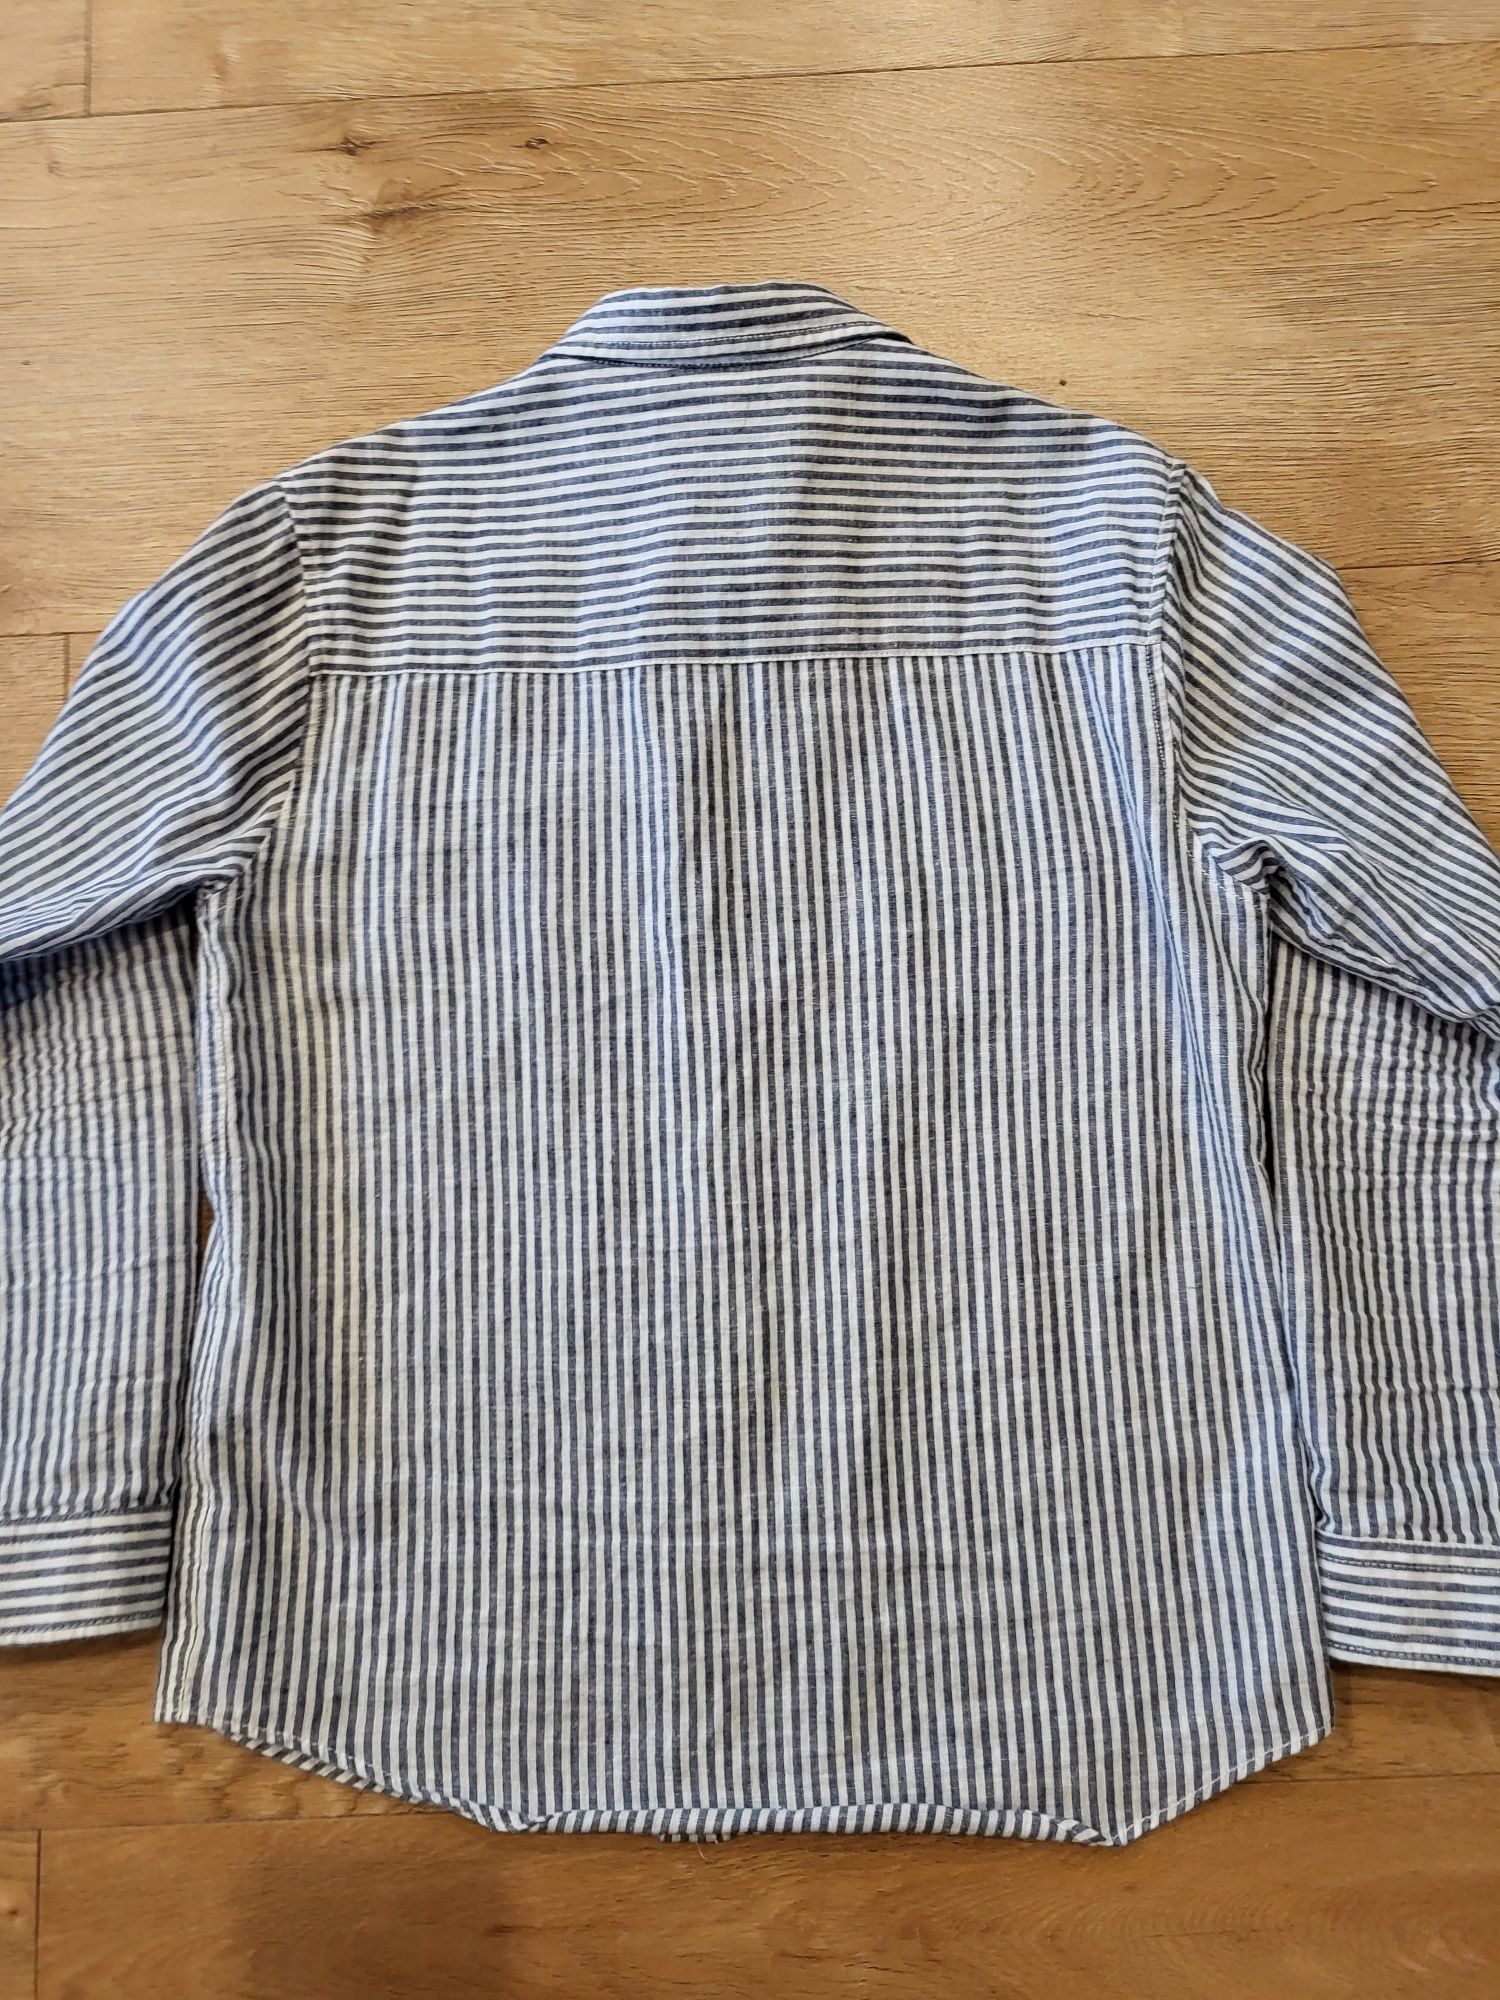 Zara 140 koszula paski casual wizytowa bawełna super stan